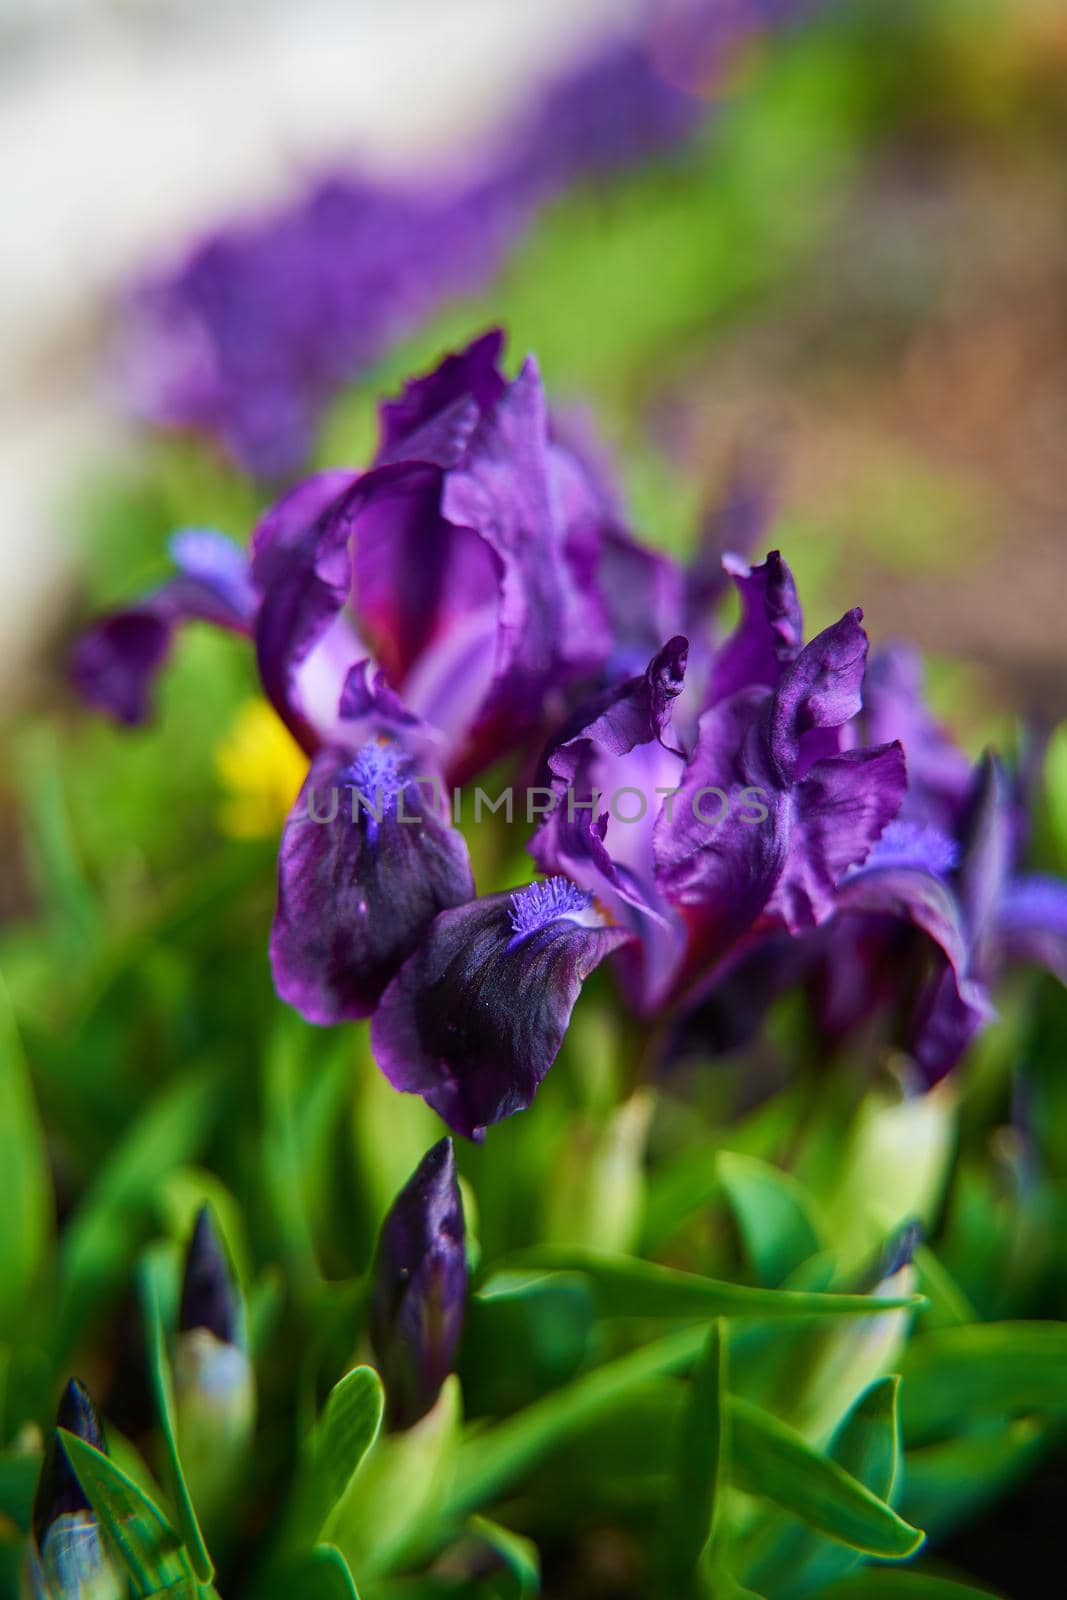 Purple iris flower close up in the garden.